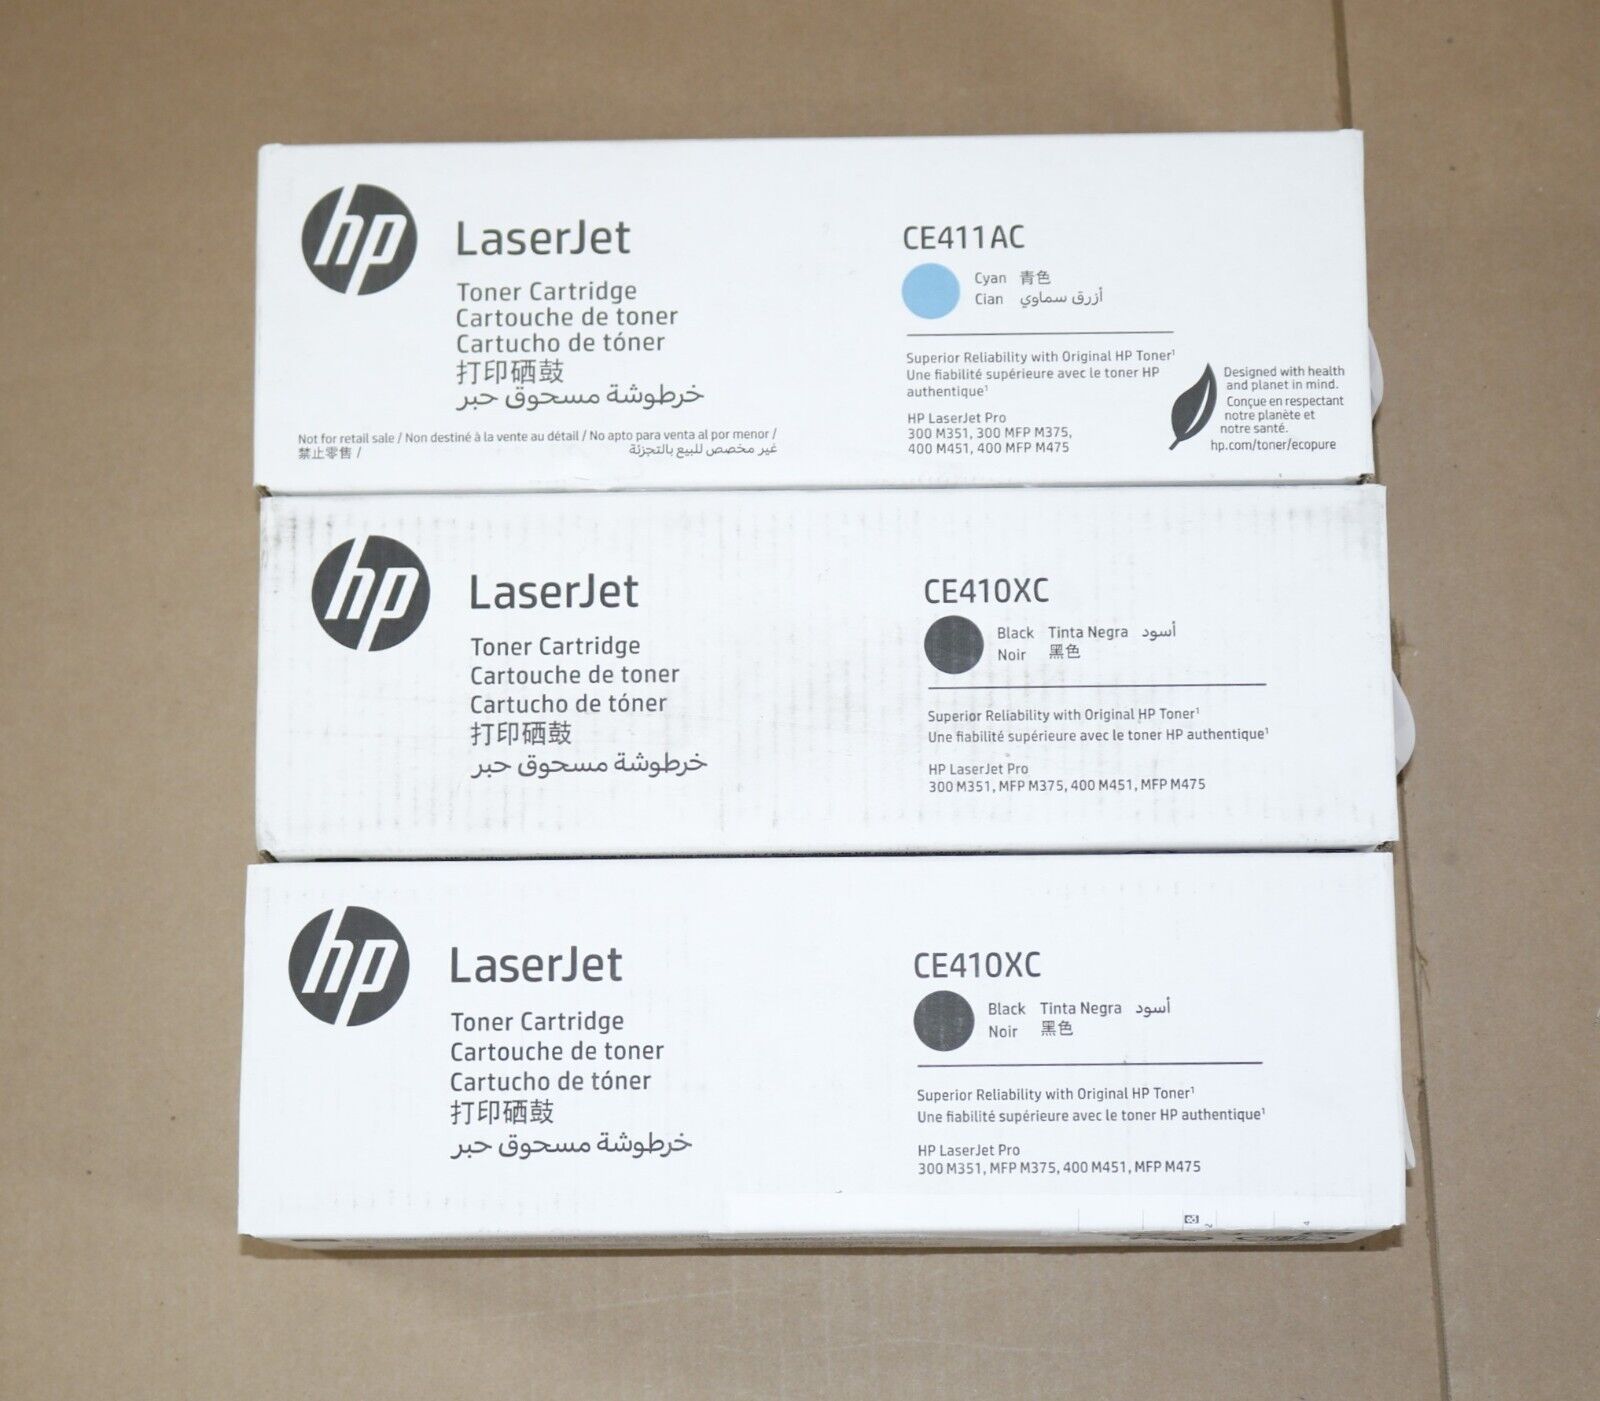 3 New OEM HP LaserJet 300,M351,M375,400,M451 CKK LaserJet Toners CE410XC,CE411AC